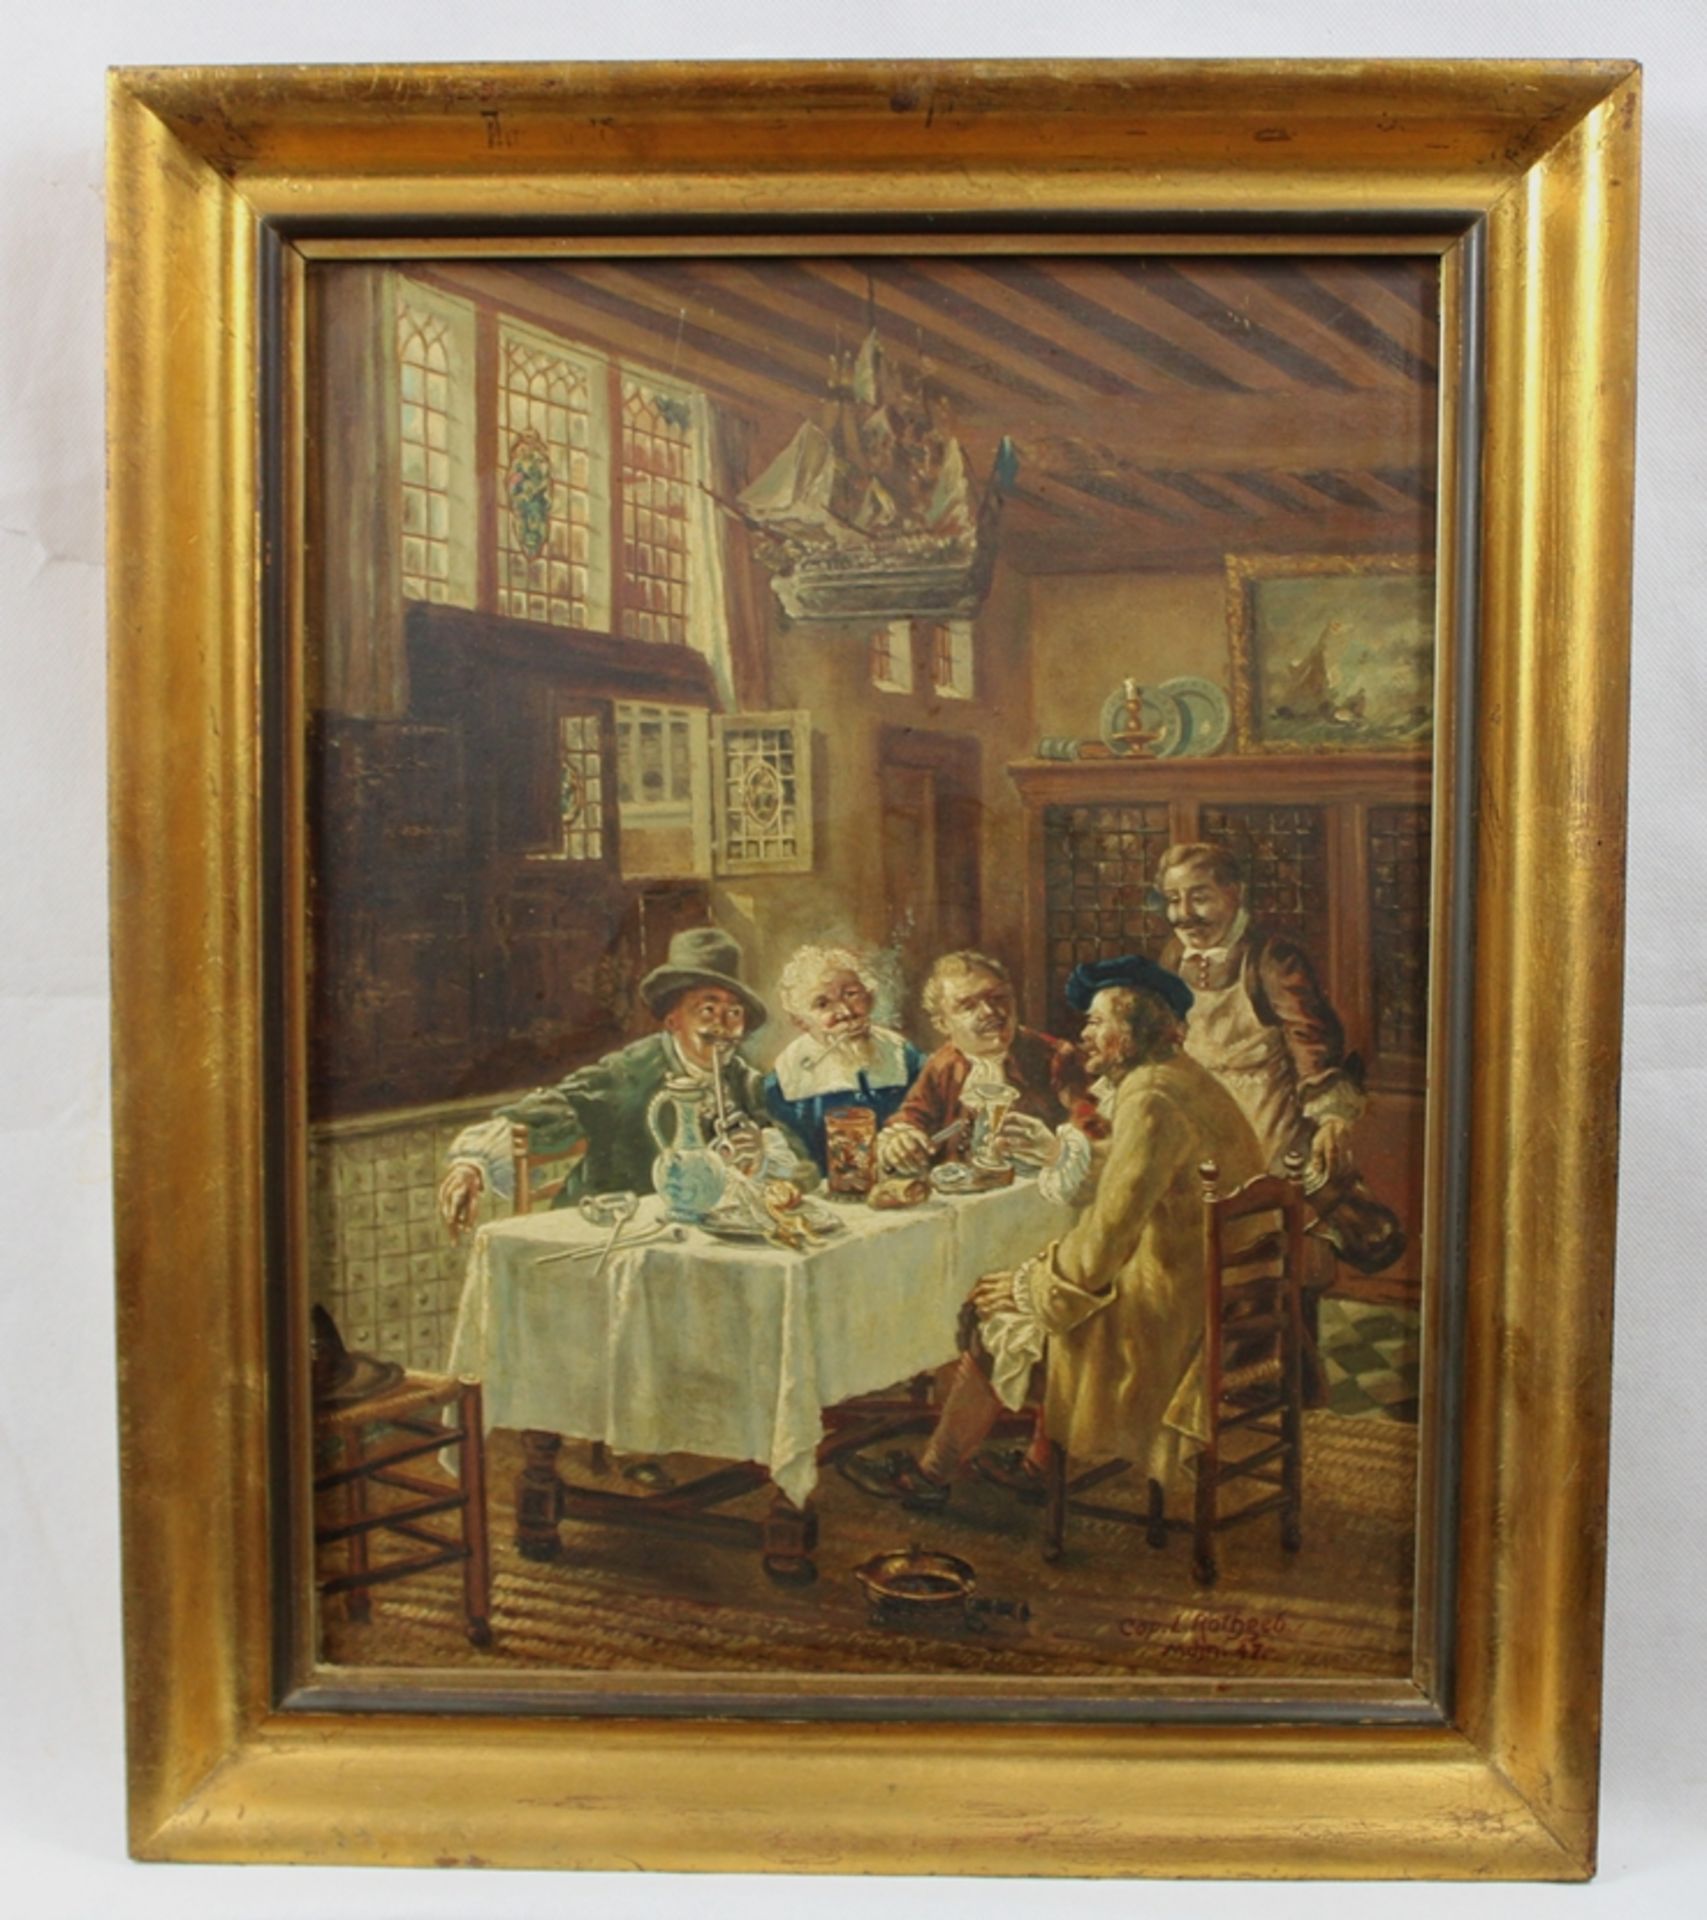 L. Rothgeb Gemälde Copie 1947 ca. 50,5 x 41,5 cm (mit Rahmen)